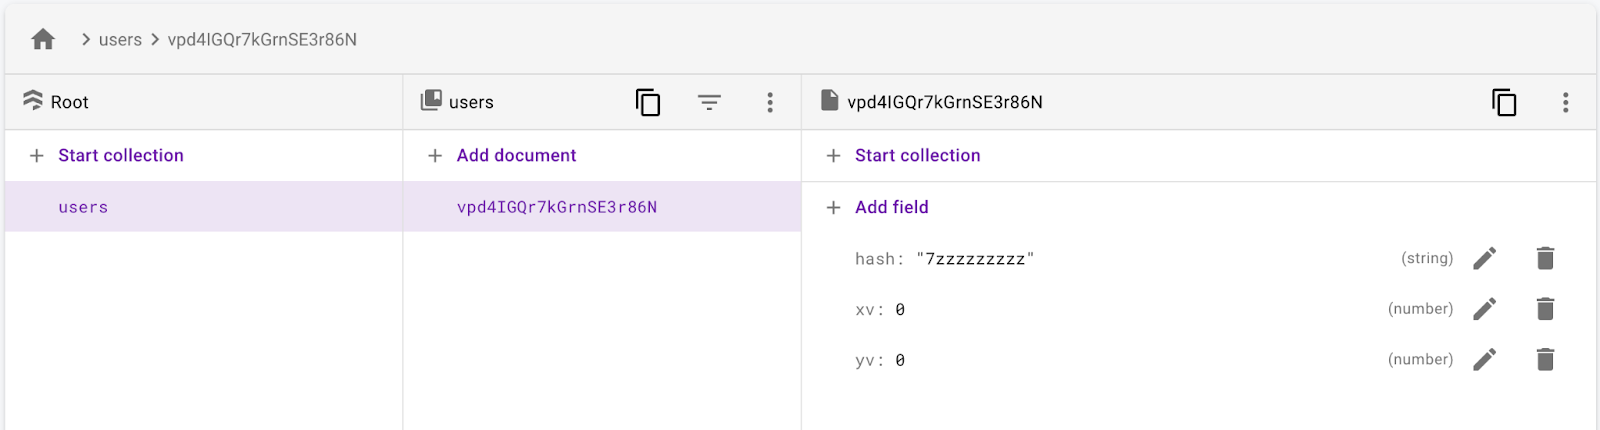 La colección usuarios con un documento de usuario que tiene un campo xv, yv y hash.